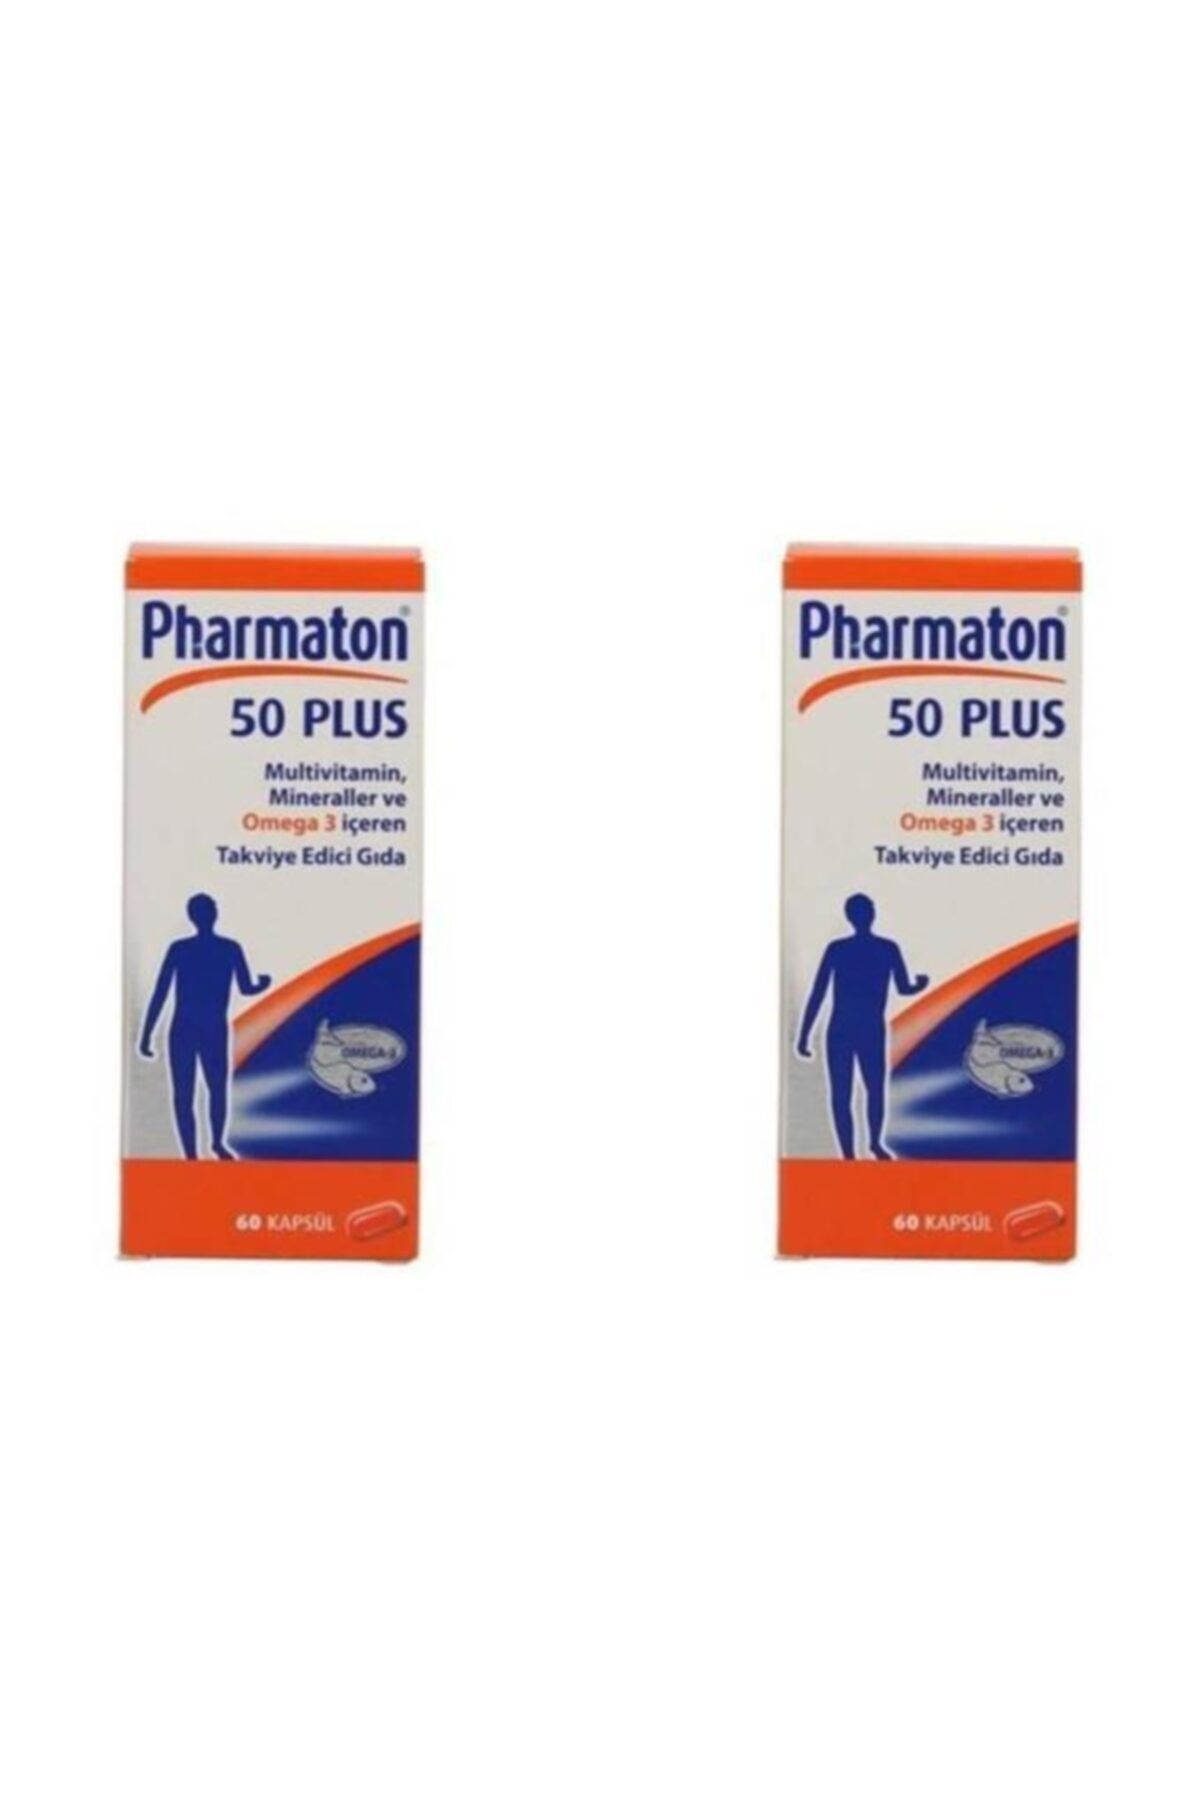 4moms Pharmaton50PLUS 60 KAPSÜL, 2'li Paket